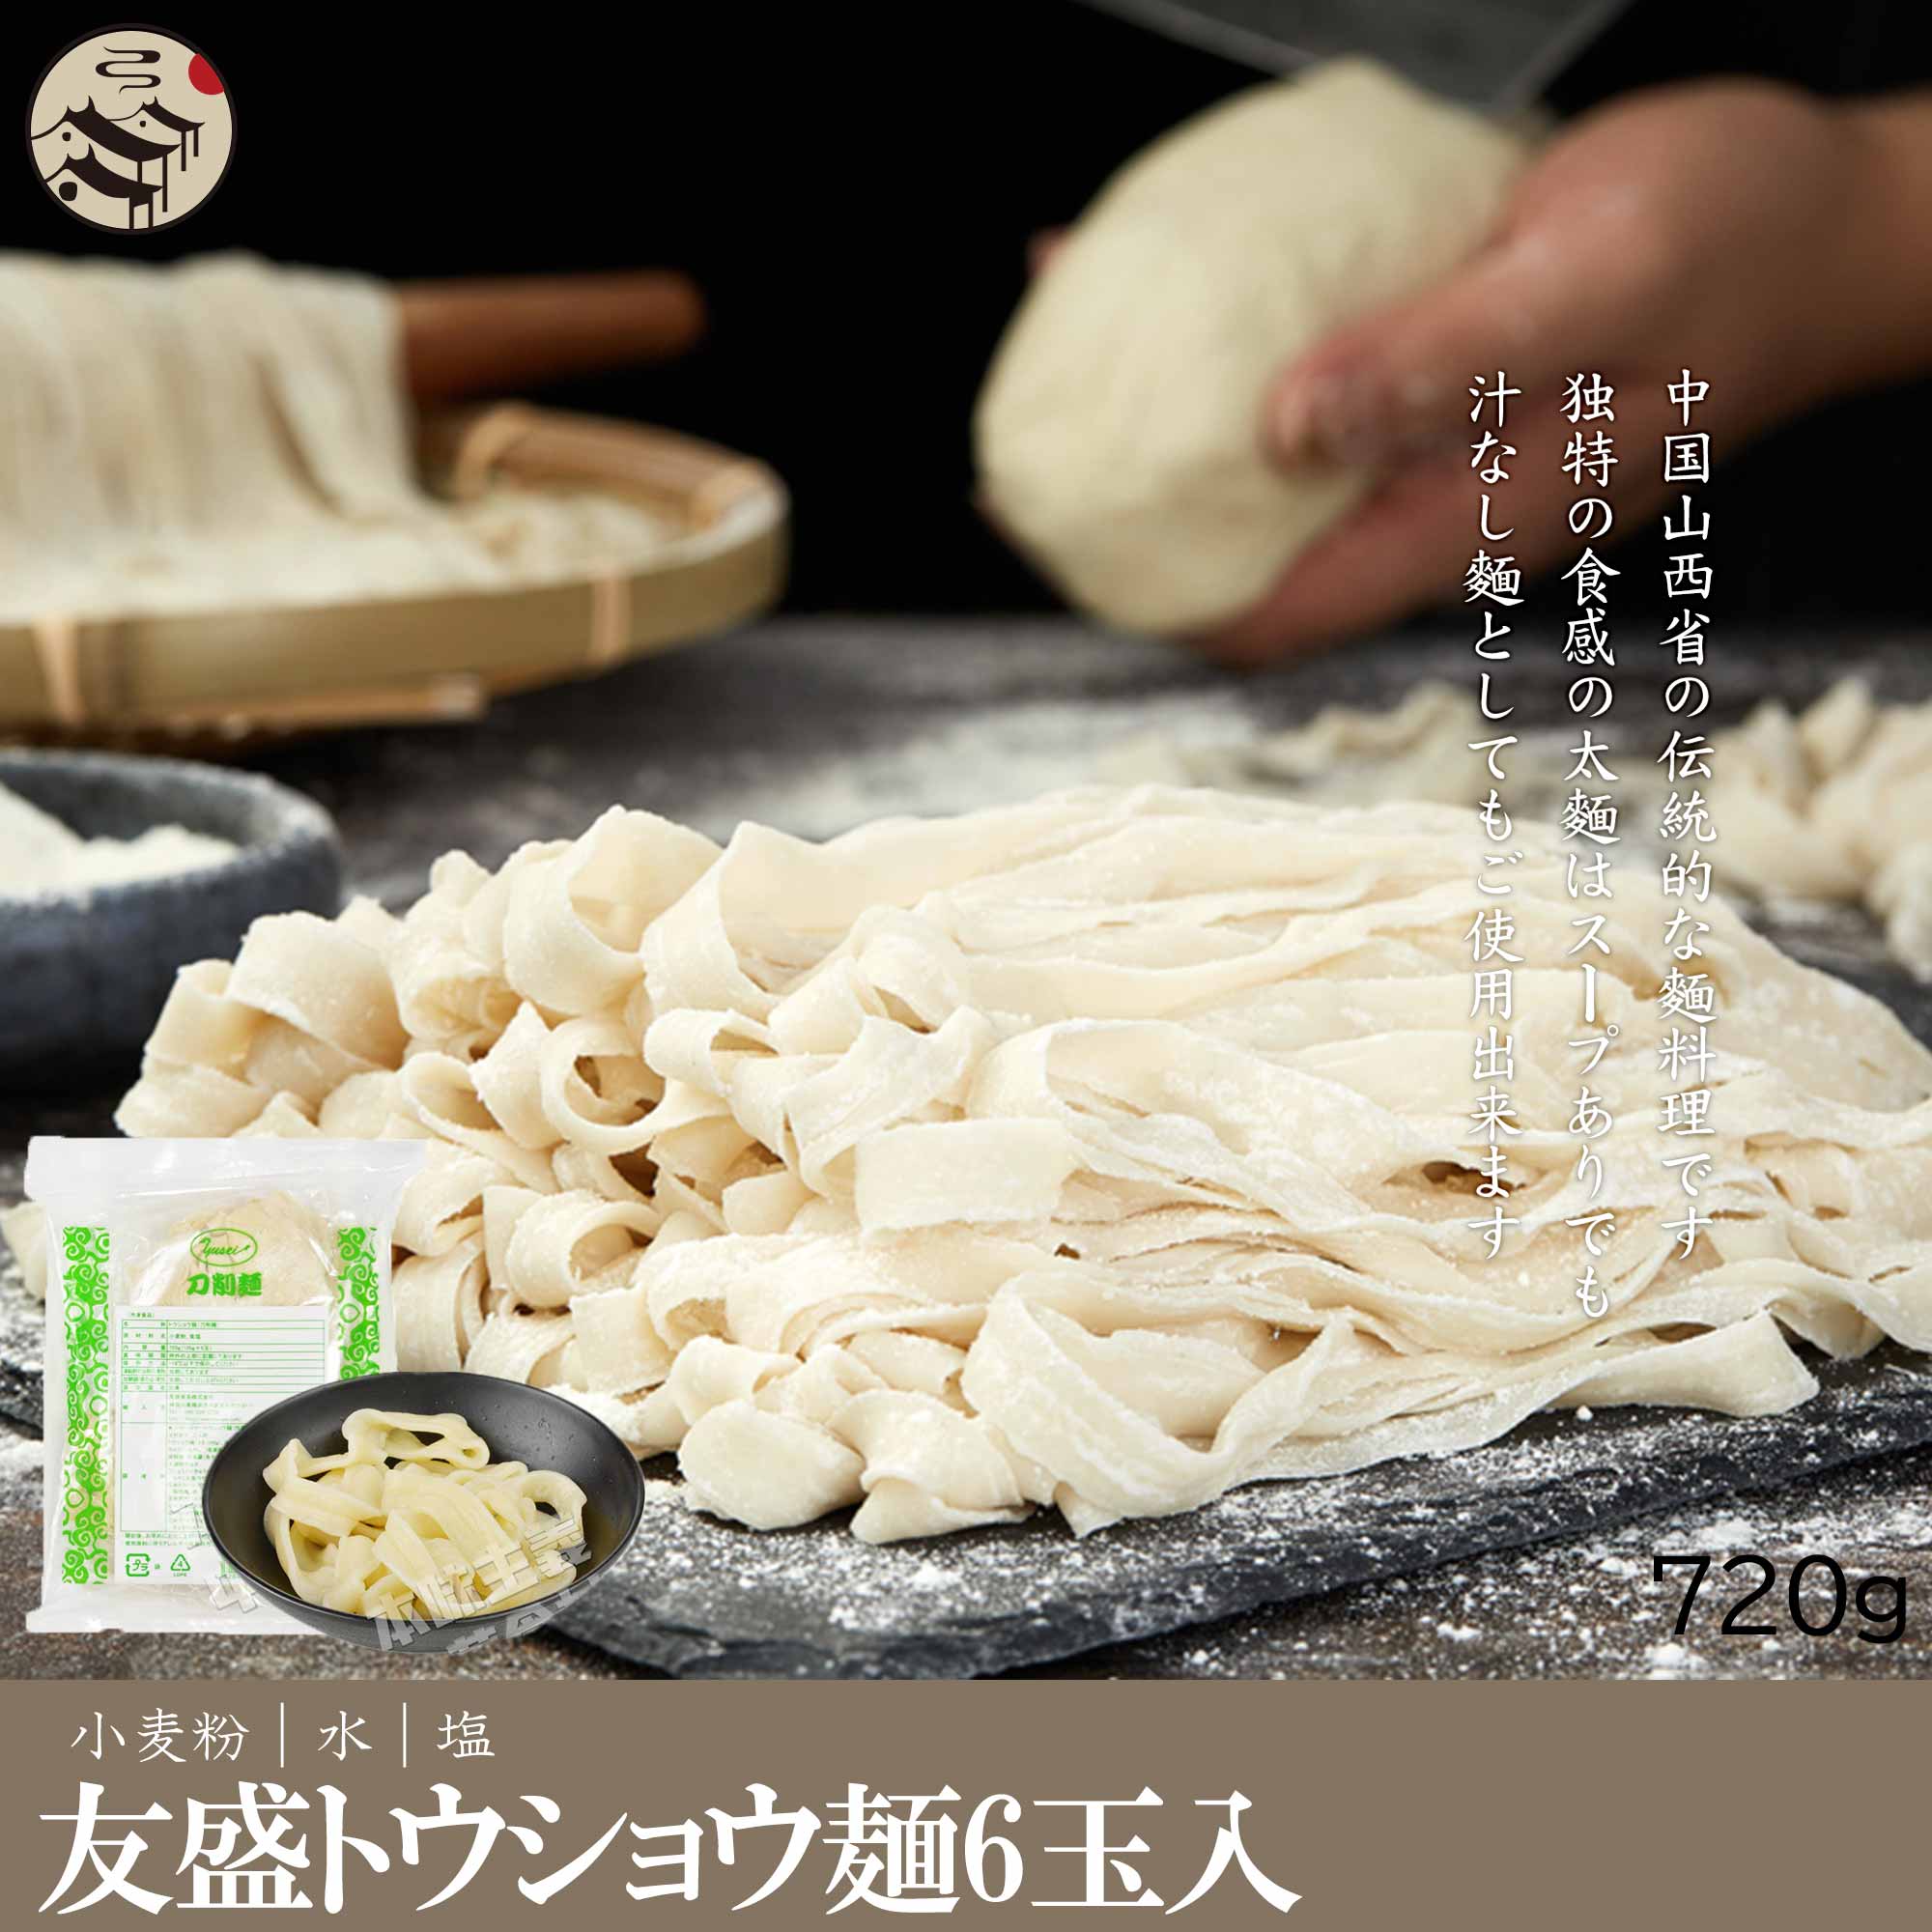 台湾刀削麺(6食入り)720g 生めん とう